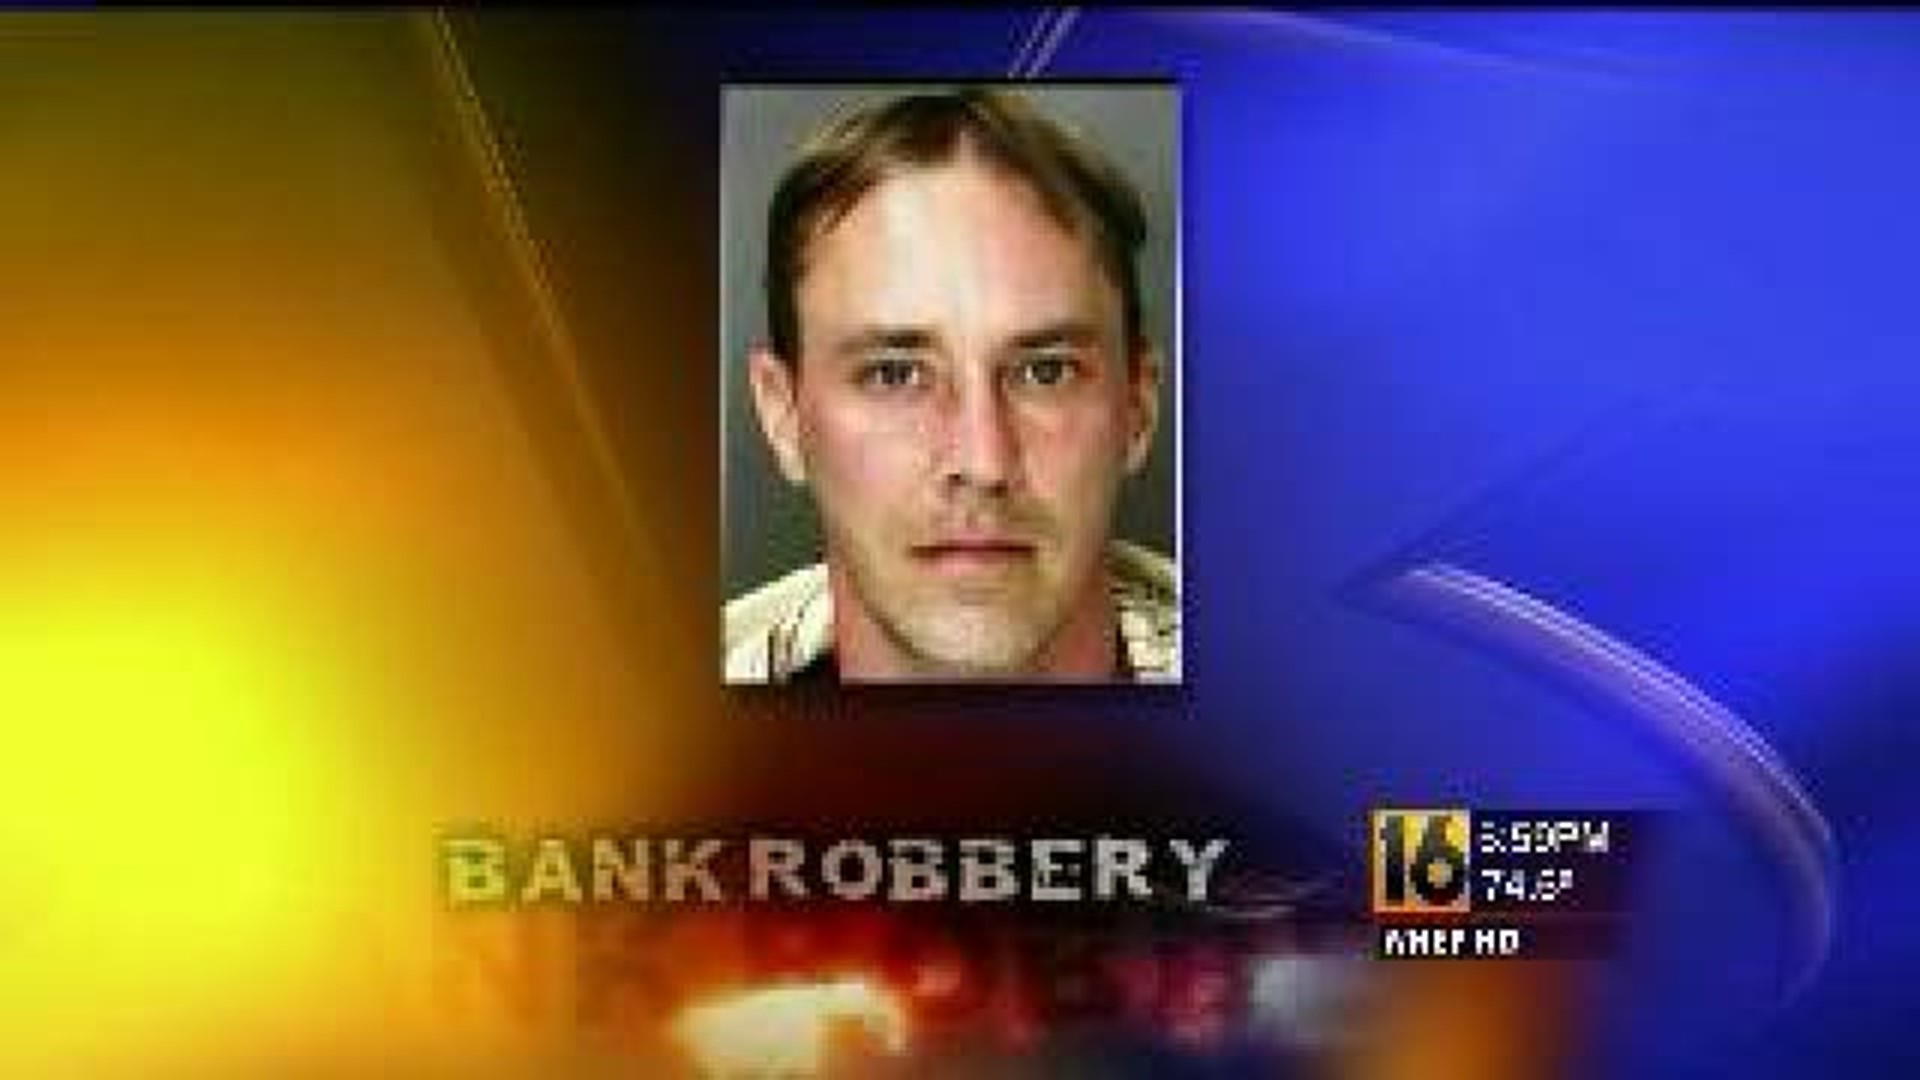 Cops Find Suspect in Bank Heist